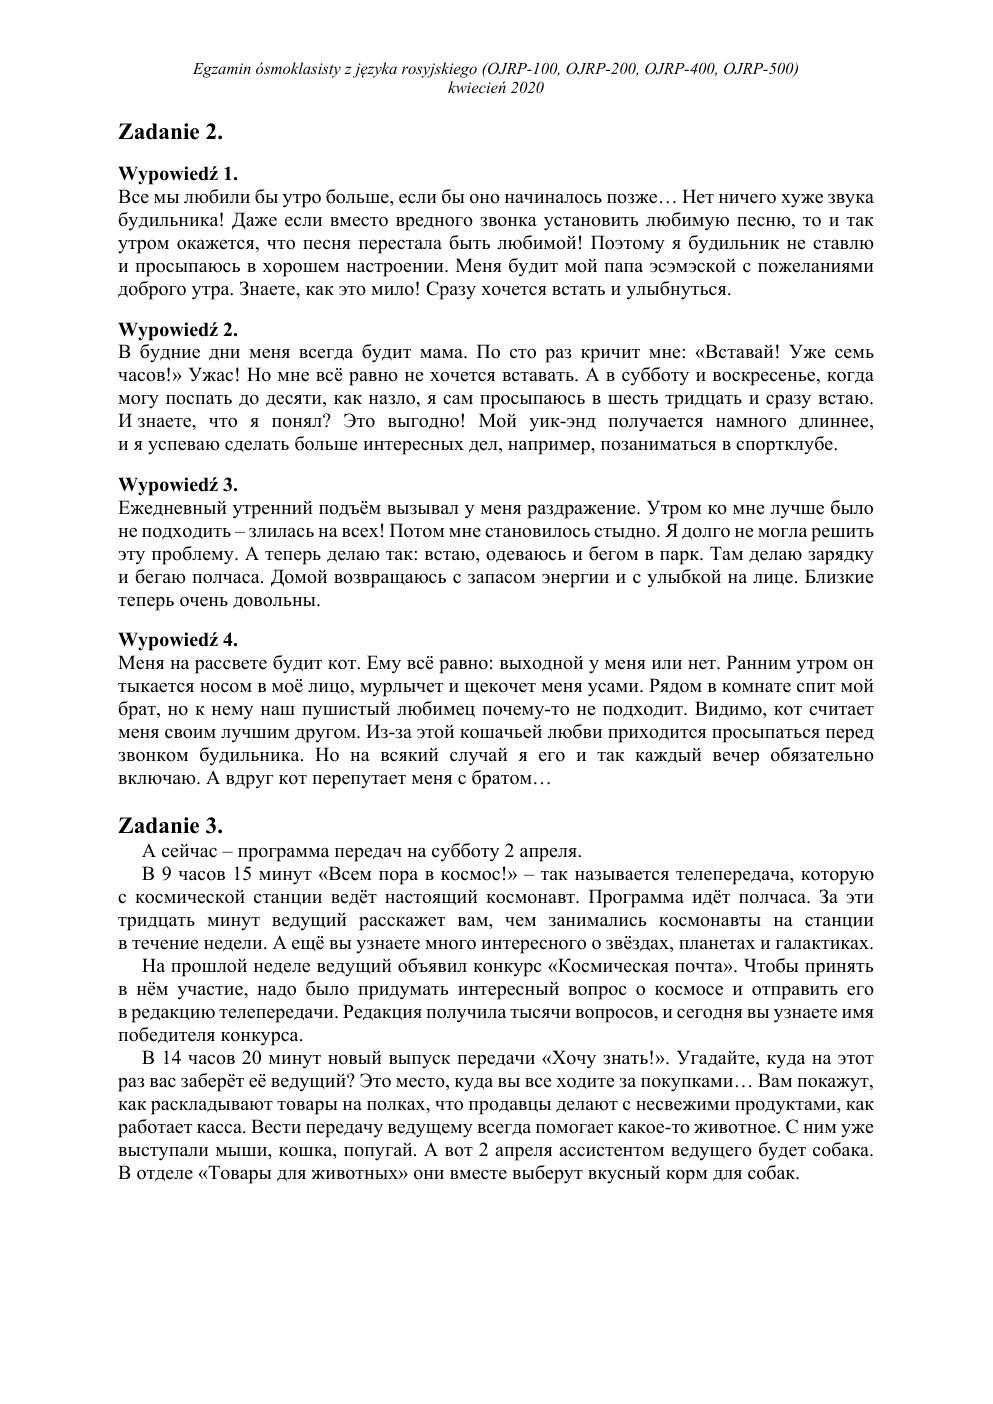 transkrypcja - rosyjski - egzamin ósmoklasisty 2020-2